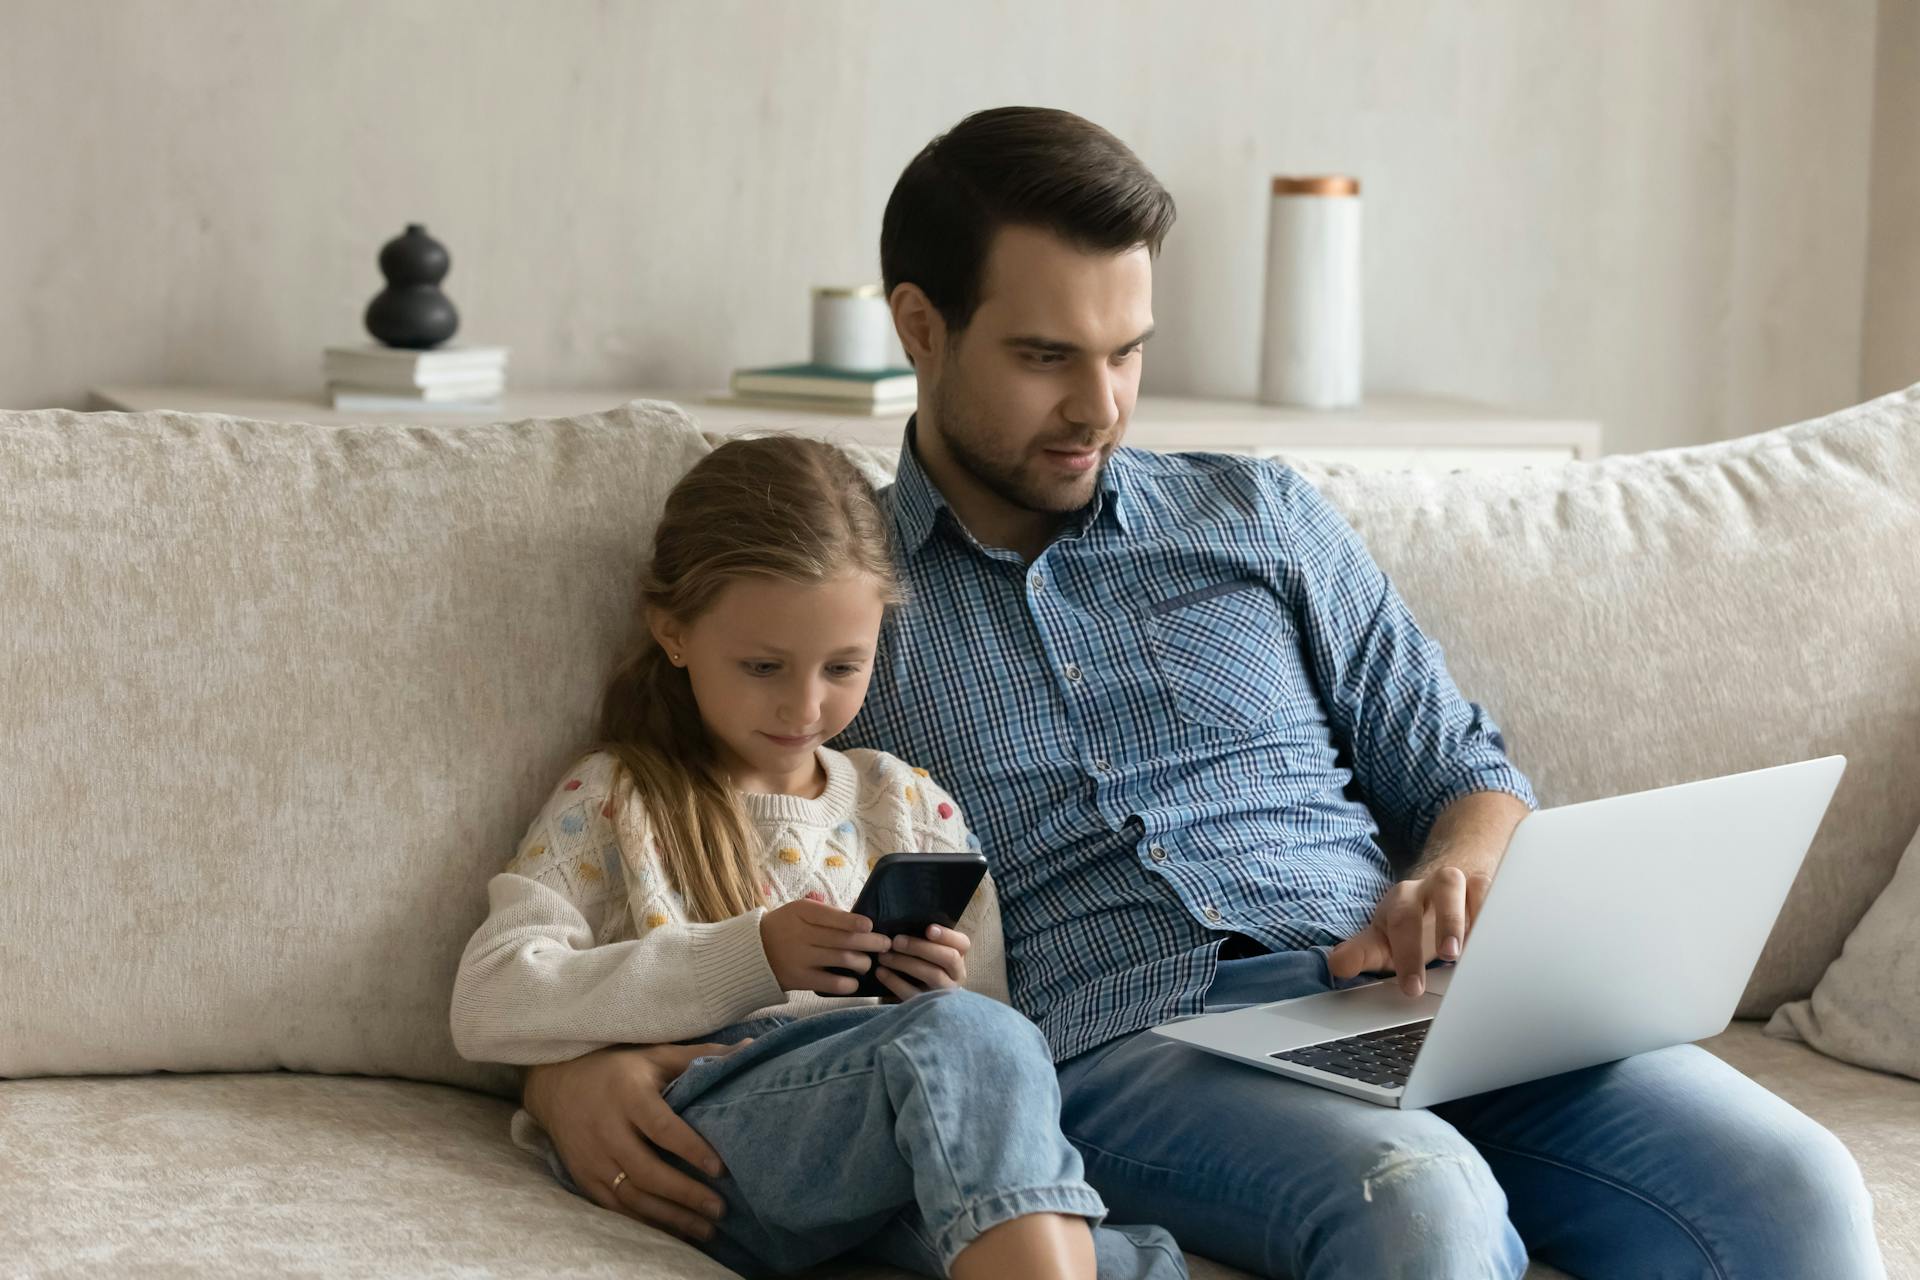 Mand sidder og kigger på sin computerskærm mens pige sidder ved siden af ham og kigger på sin telefon. De sidder tæt sammen i en sofa.